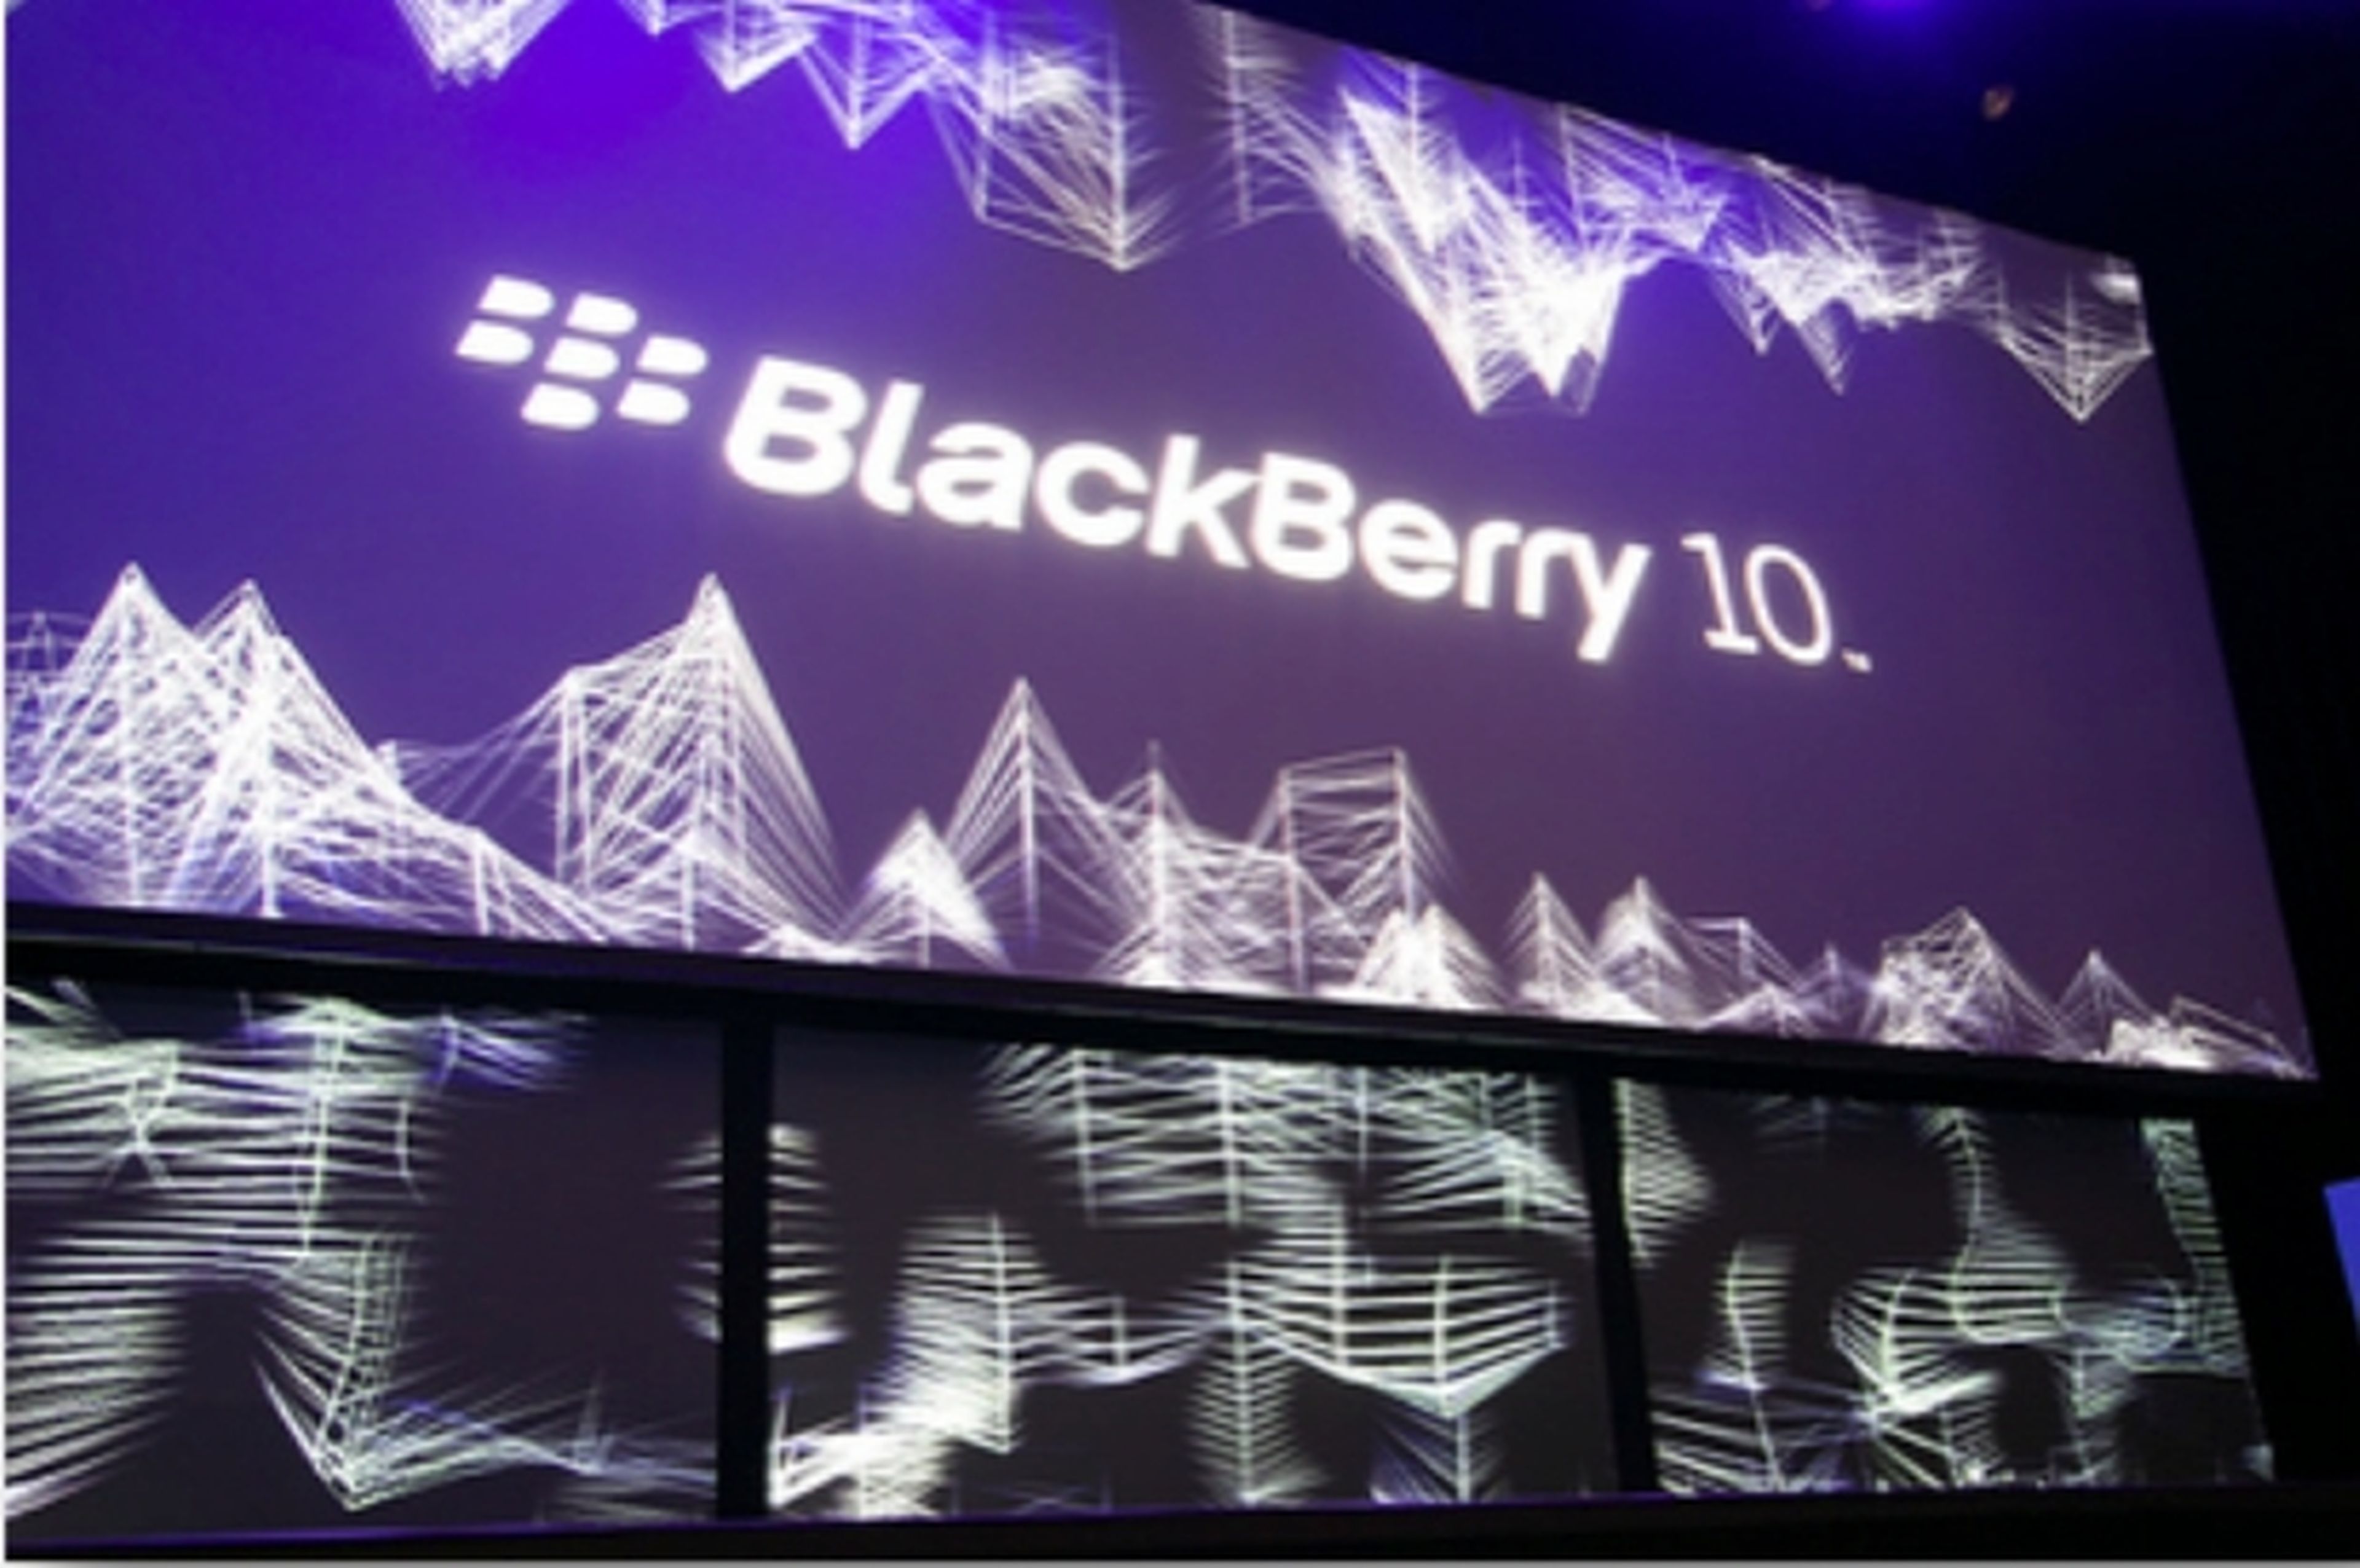 Blackberry 10.1 se estrena con muchas mejoras y novedades, como la integración de redes sociales